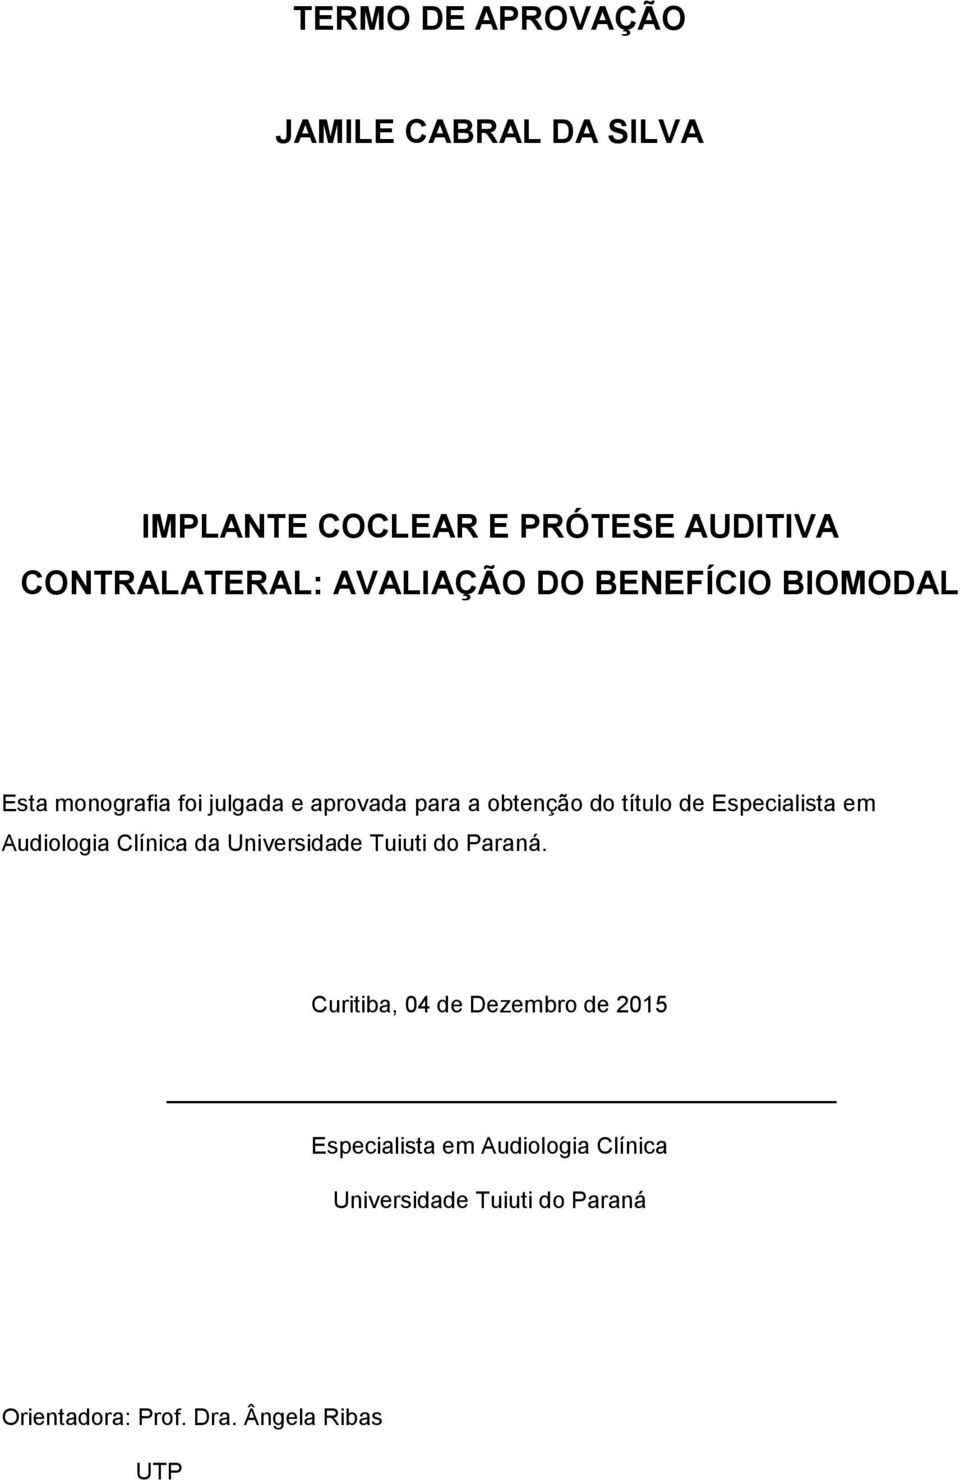 Especialista em Audiologia Clínica da Universidade Tuiuti do Paraná.